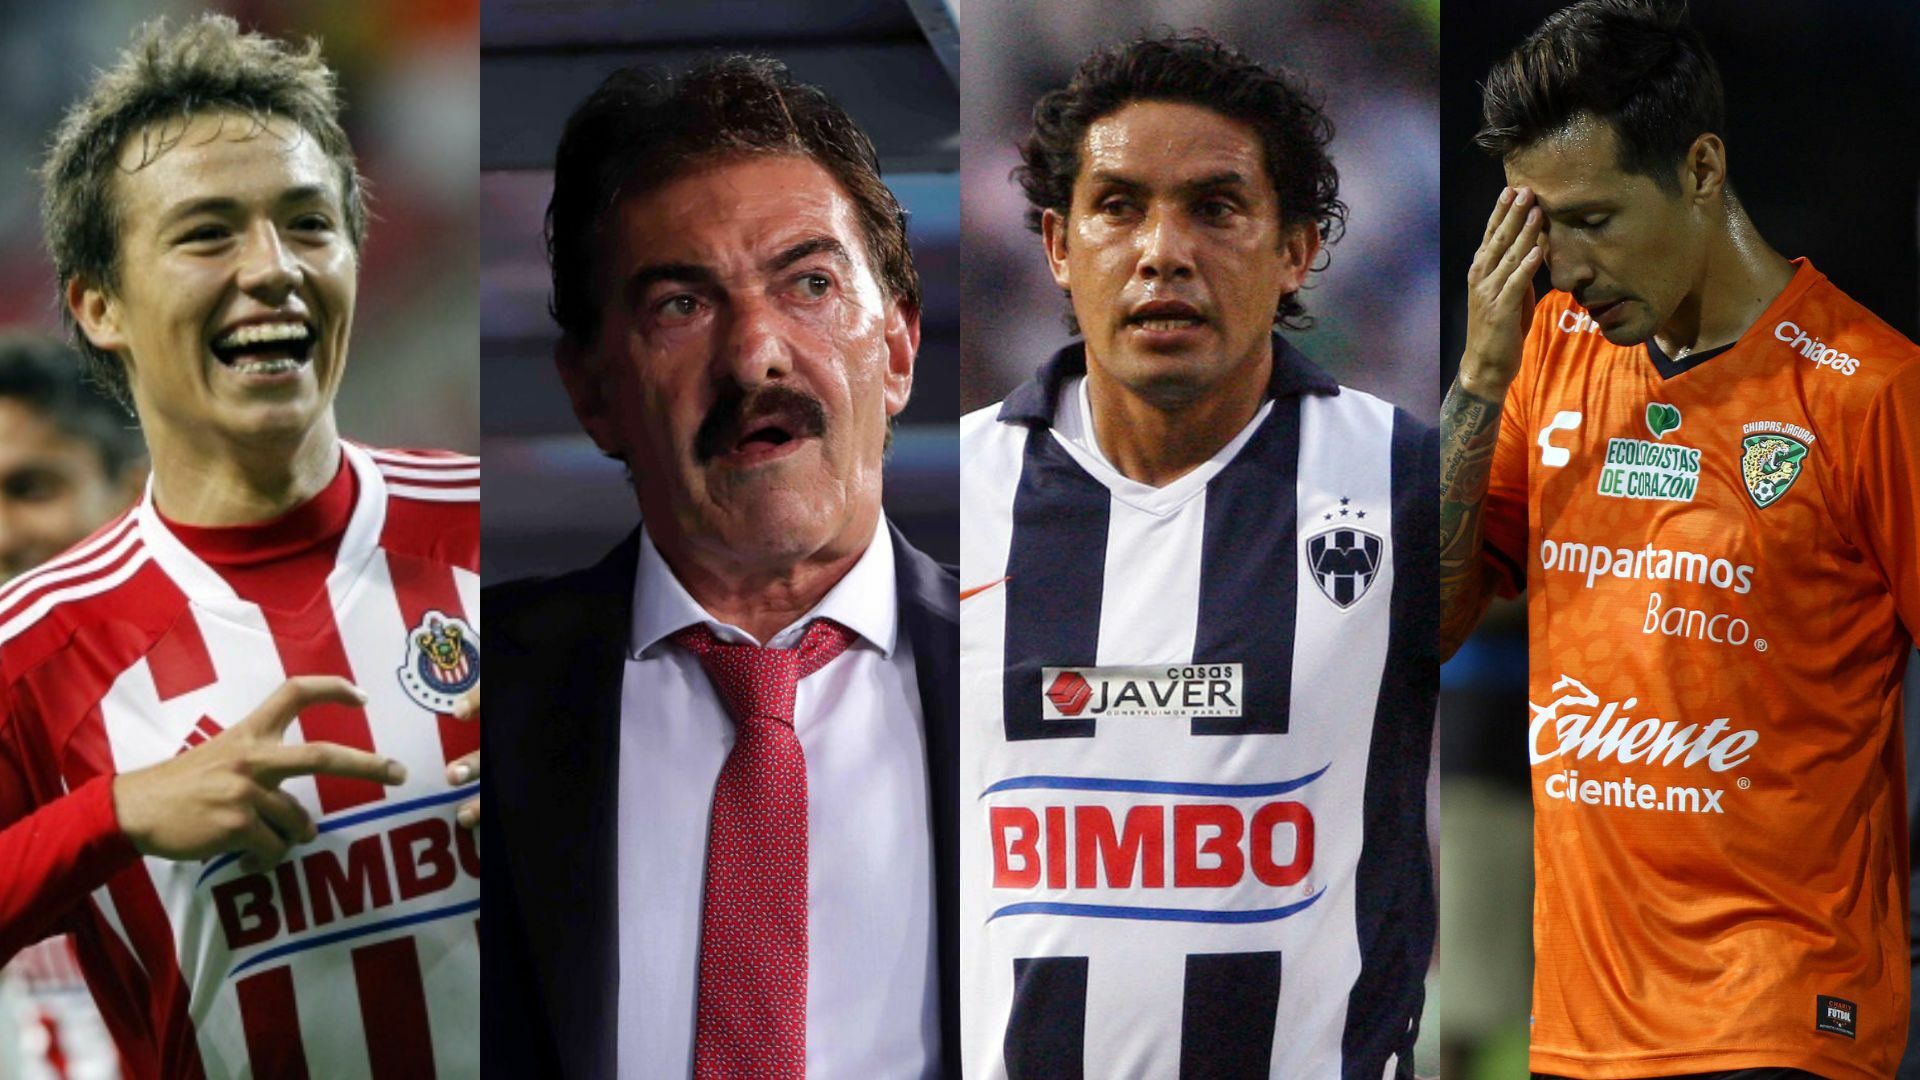 Los escándalos sexuales que han marcado la Liga MX en los últimos años